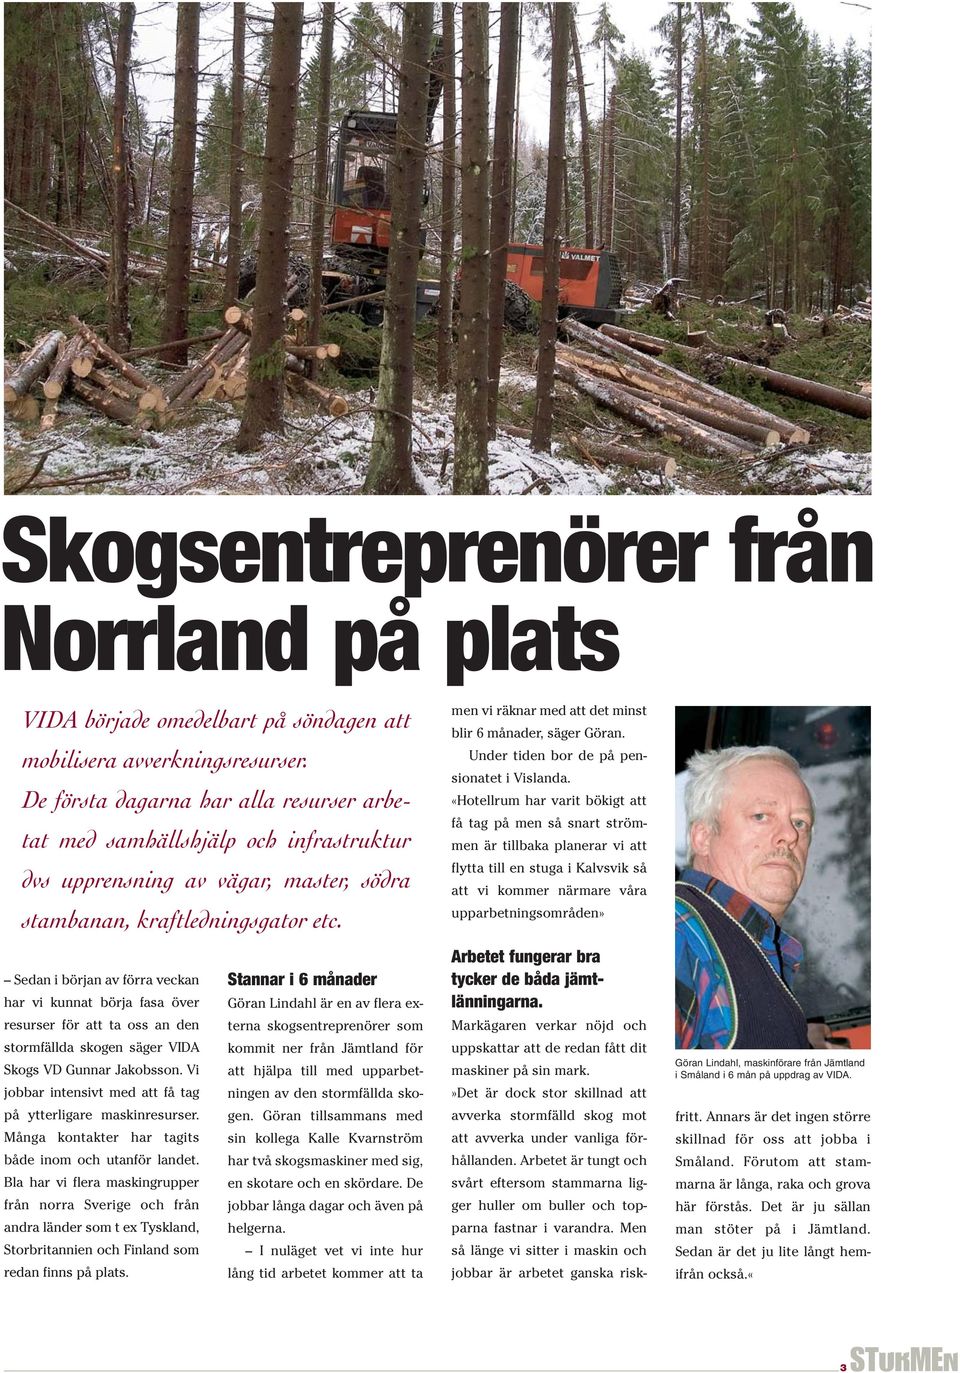 Sedan i början av förra veckan har vi kunnat börja fasa över resurser för att ta oss an den stormfällda skogen säger VIDA Skogs VD Gunnar Jakobsson.